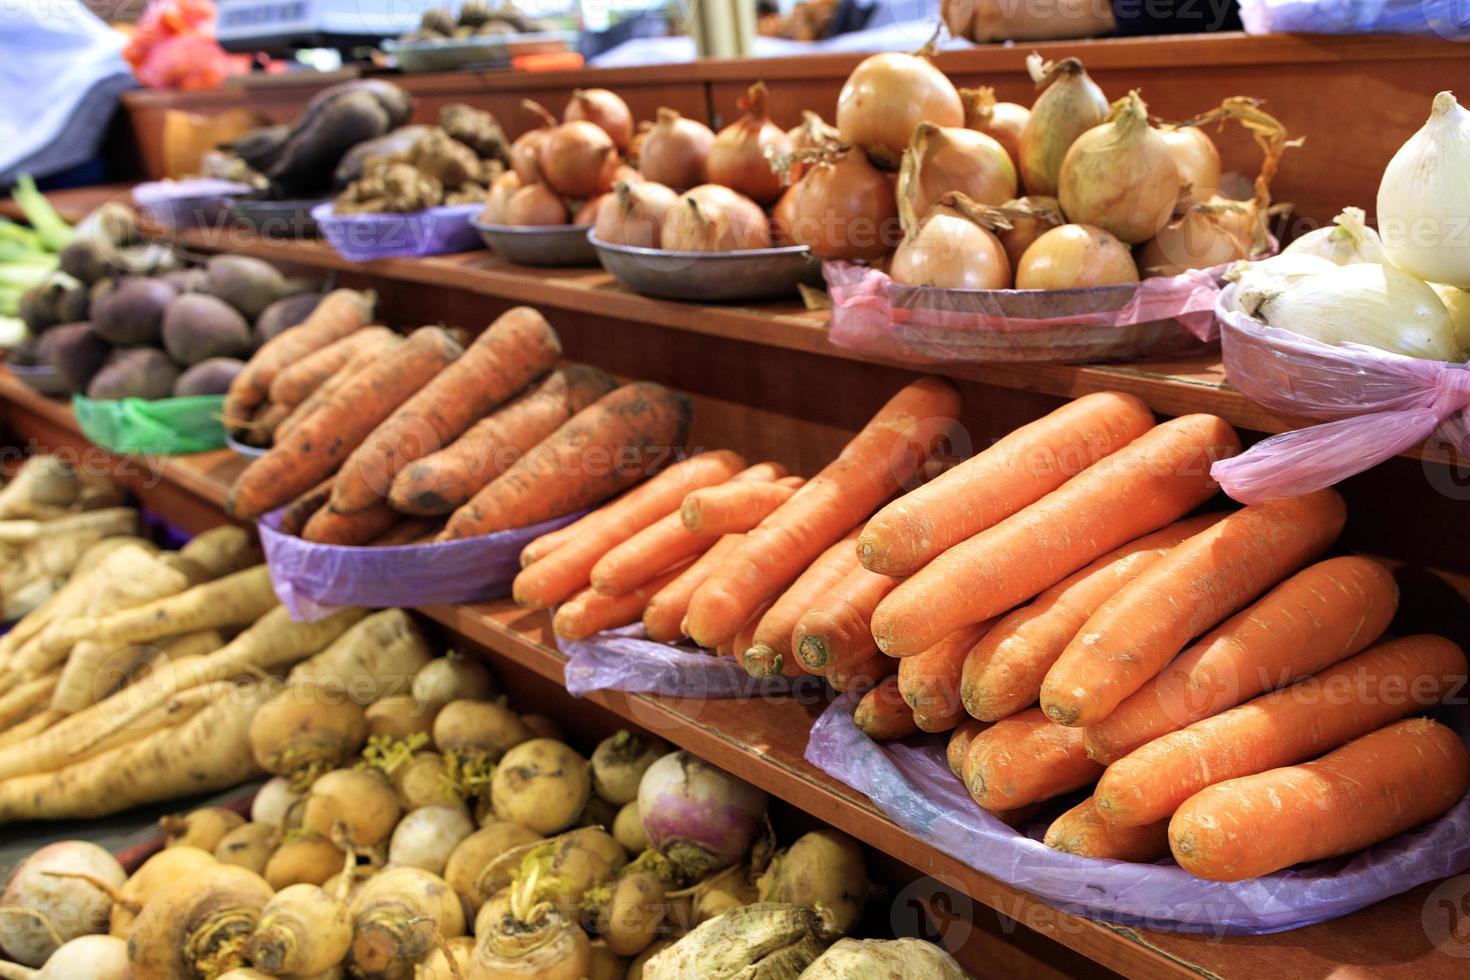 carote, cipolle, radici e altre verdure varie sono vendute sugli scaffali del mercato foto